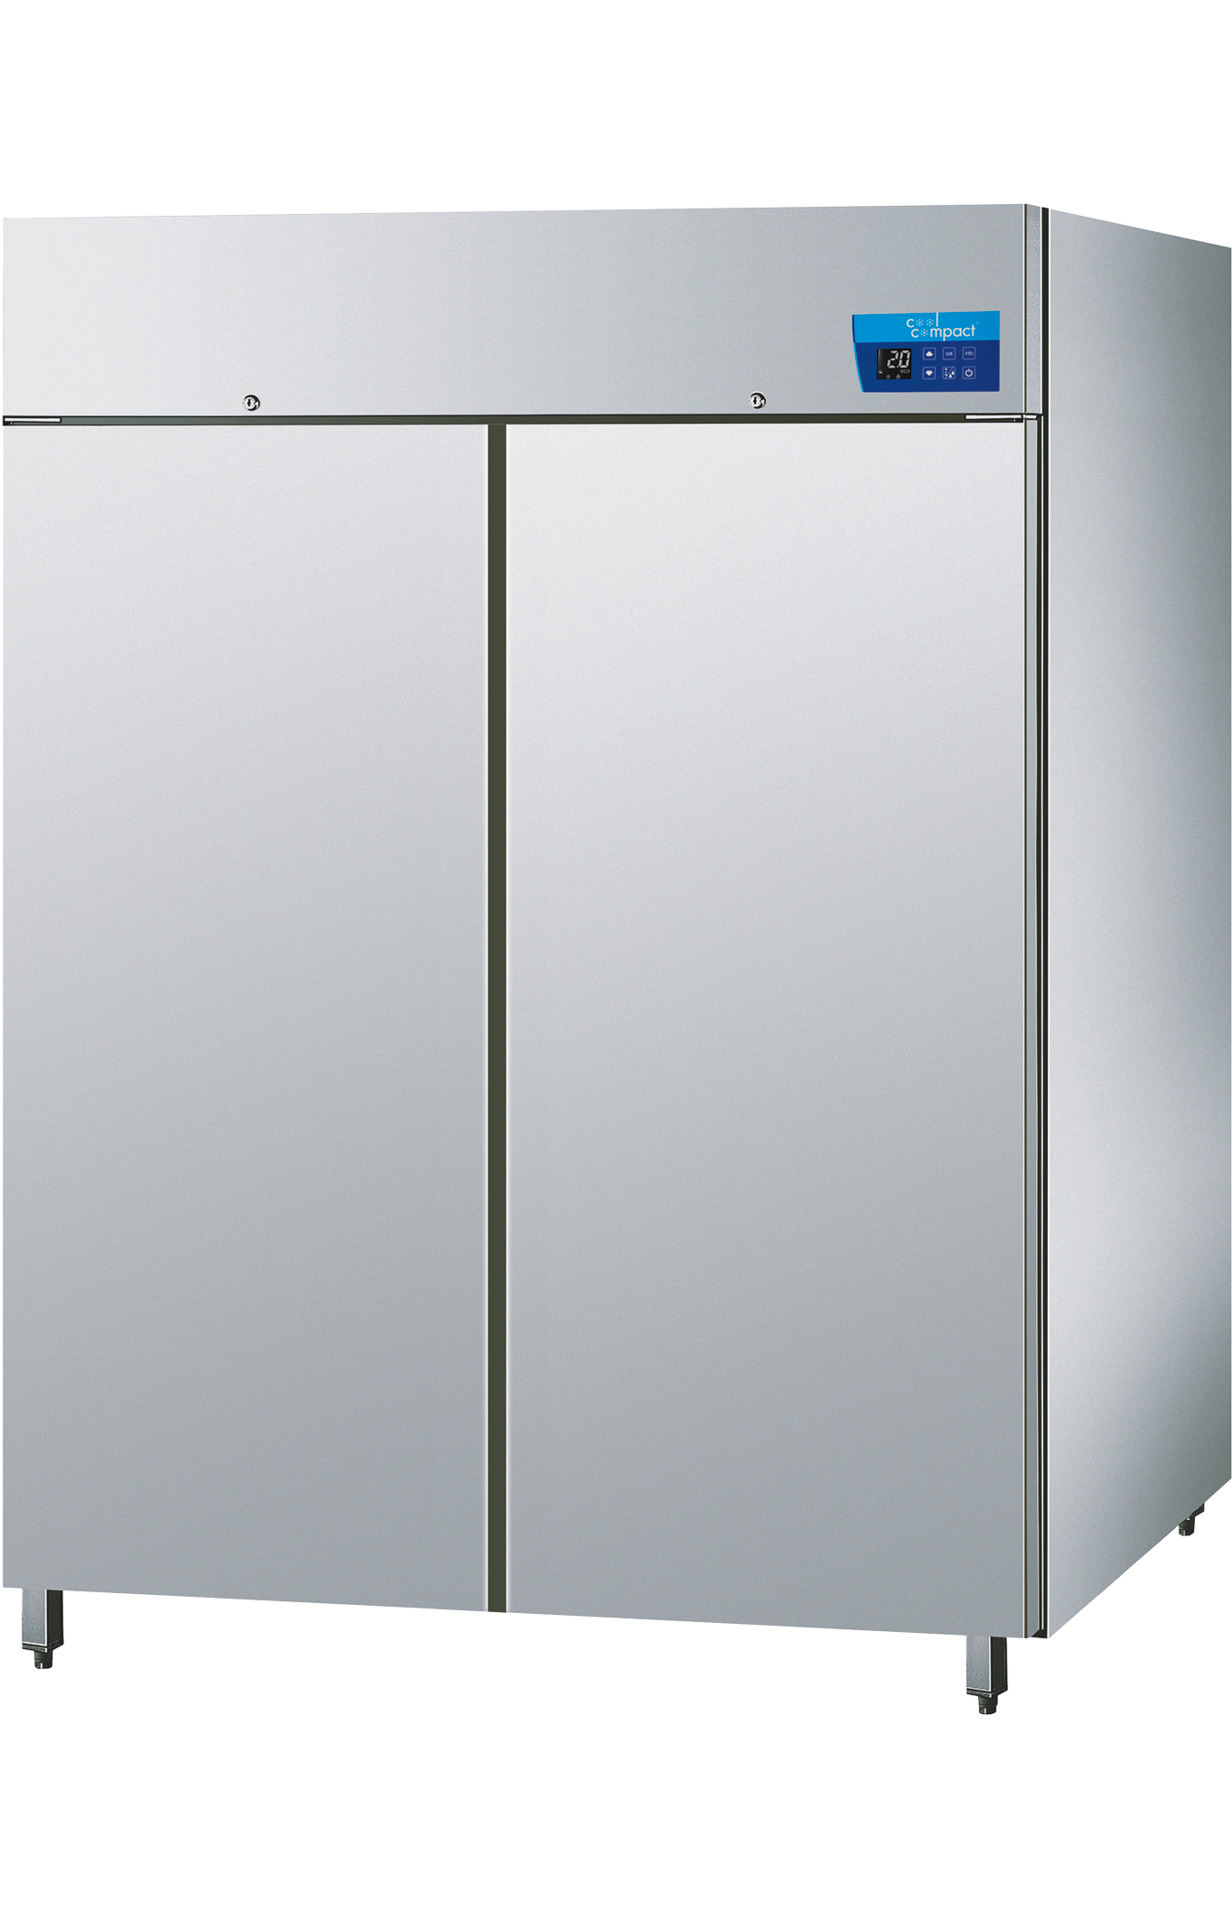 Umluft-Tiefkühlschrank mit 2 Türen  je 22 x GN 2/1 / steckerfertig